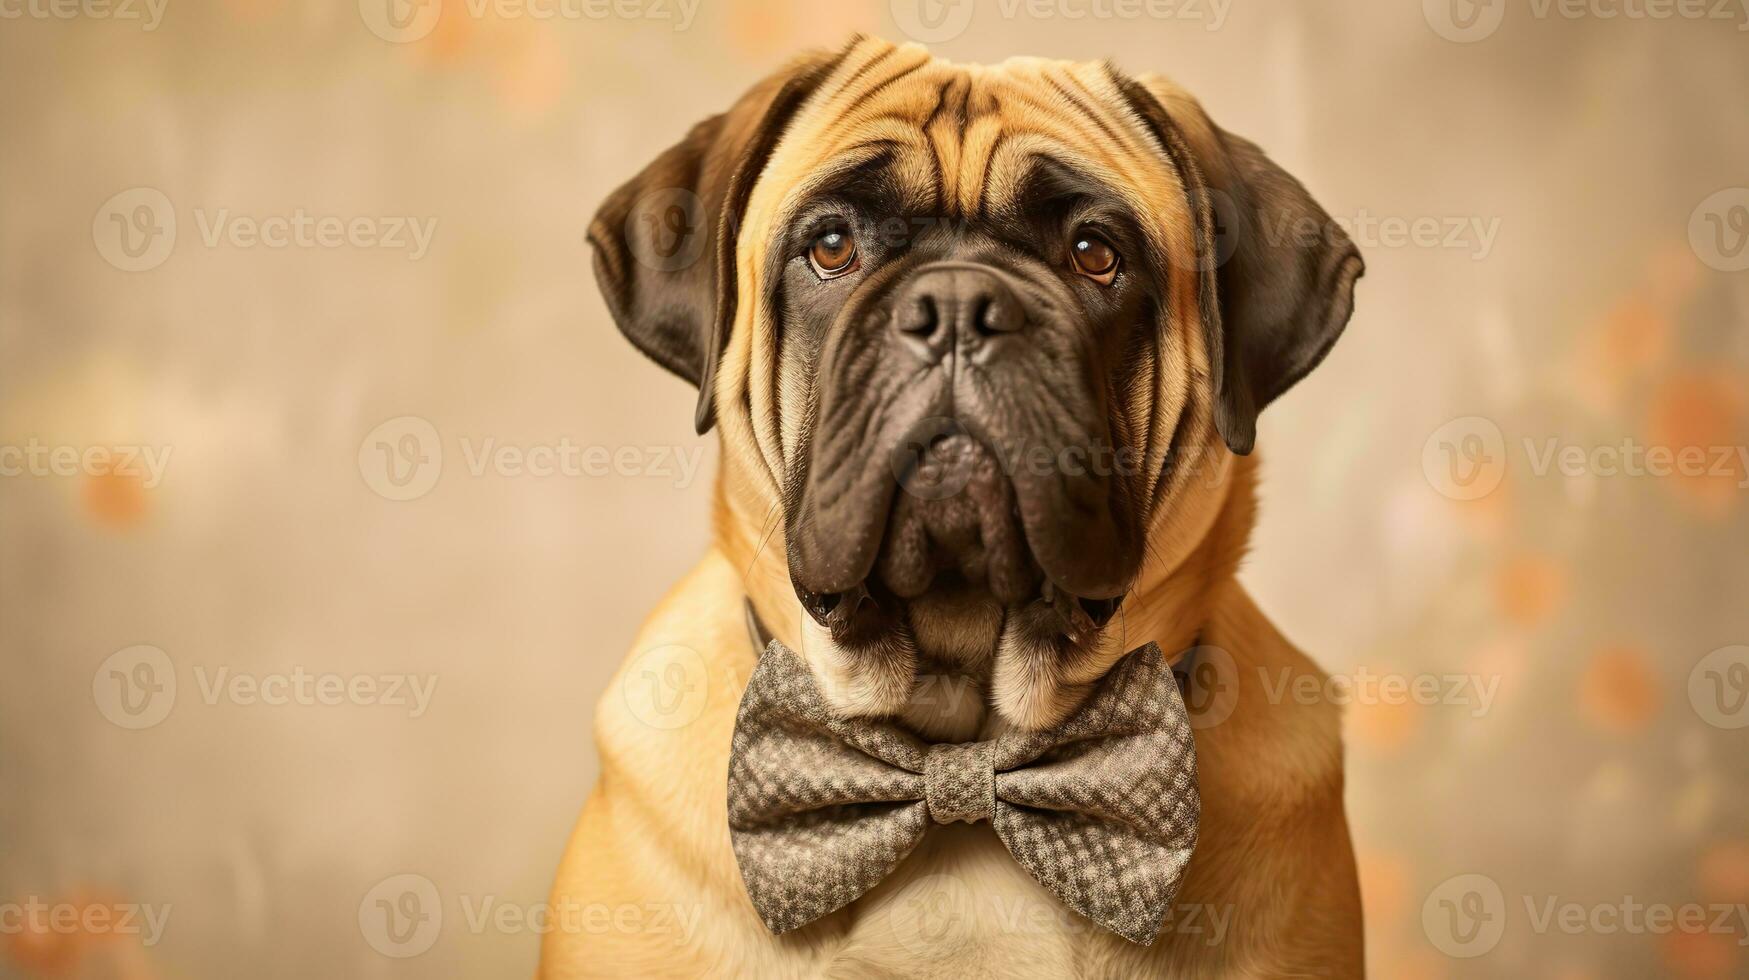 English Mastiff dog portrait on beige background. Generative AI photo